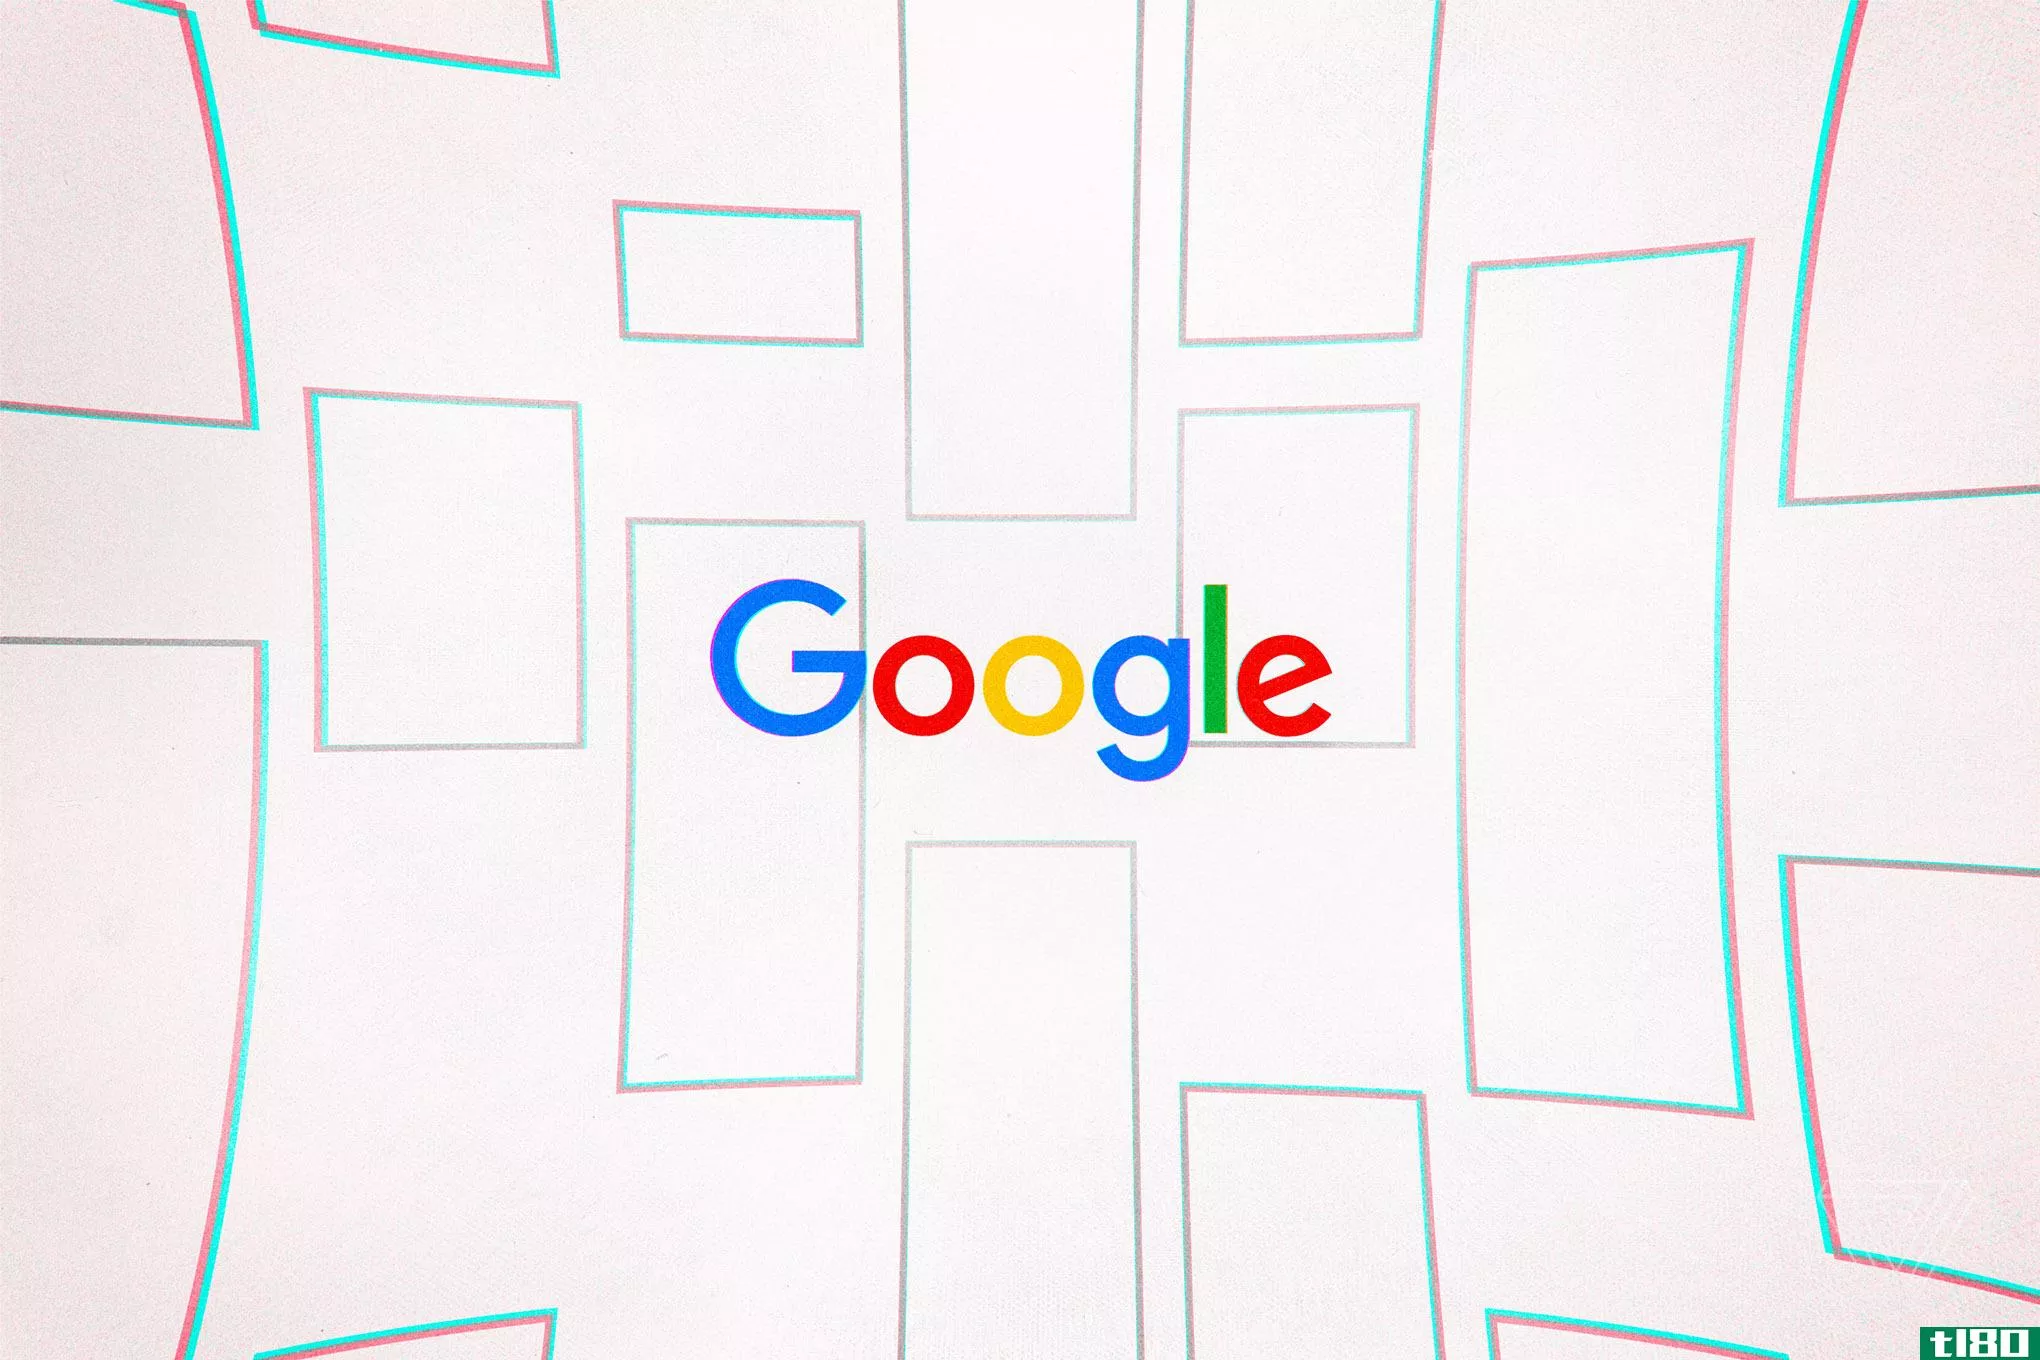 必应输给了谷歌’谷歌的新安卓搜索引擎